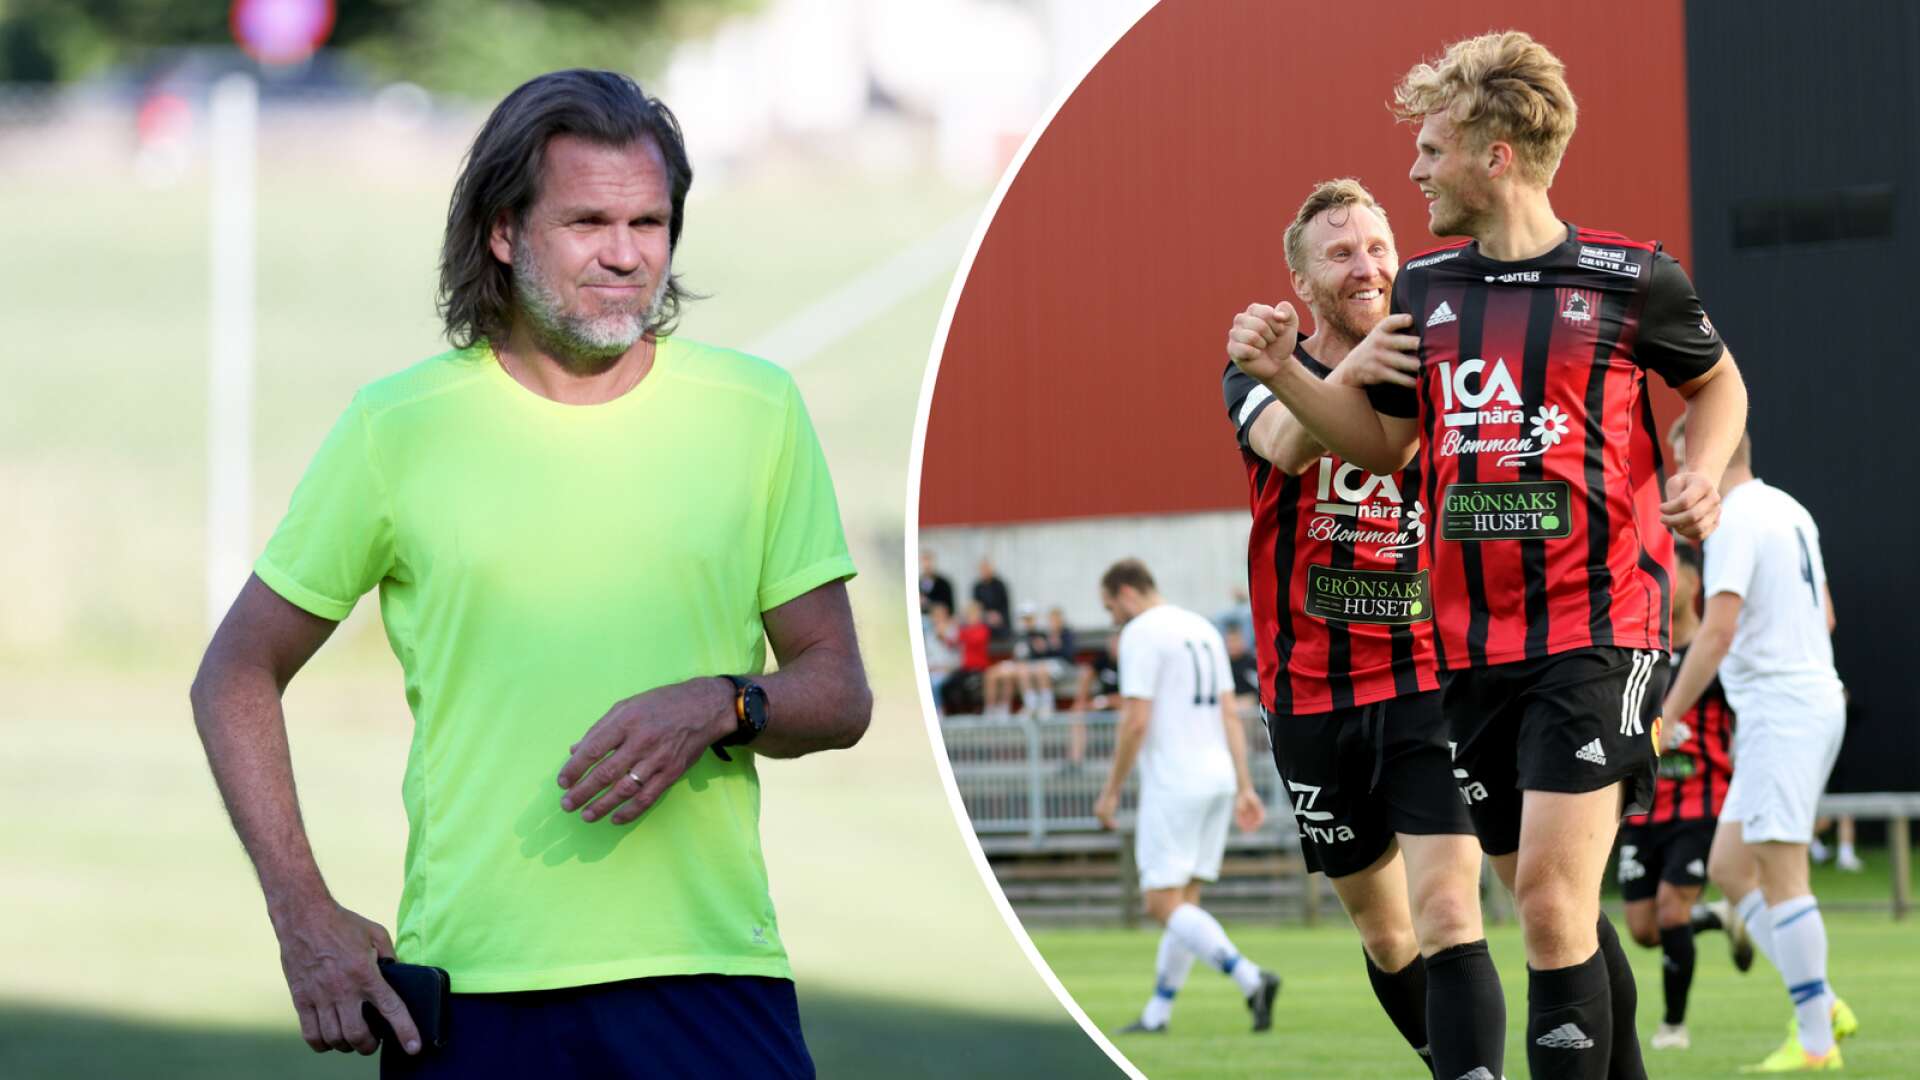 Gudmundur &quot;Gummi&quot; Magnusson är klar som ny tränare i Ulvåkers IF till nästa säsong. &quot;Gummi&quot; kommer att leda division 4-laget och ha Sadettin Özdes och Henrik Jansson Ödberg till sin hjälp under 2023.